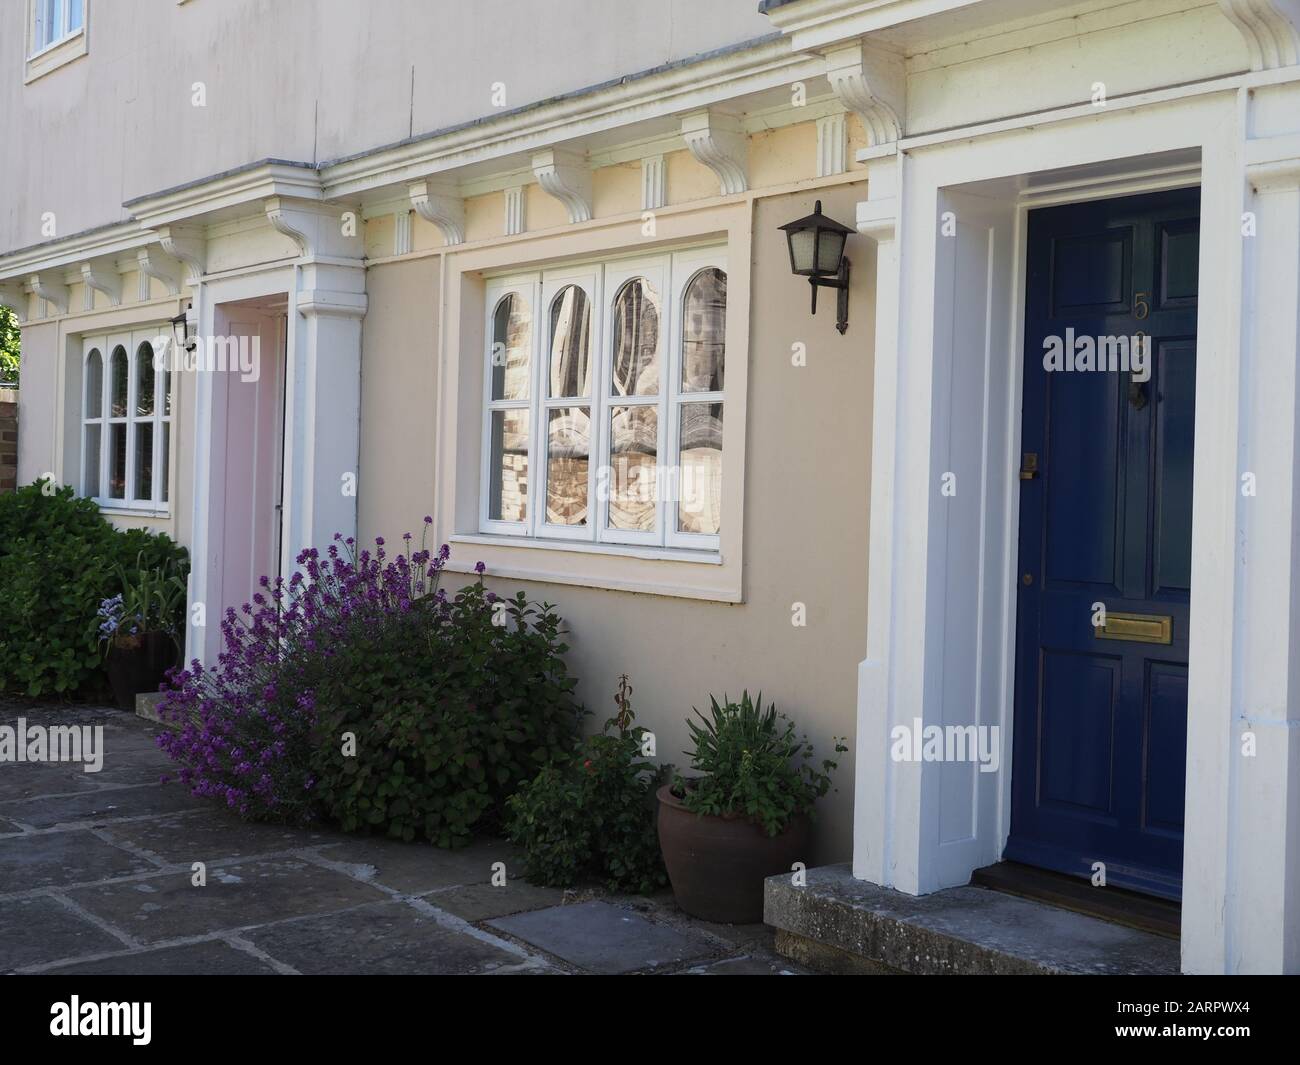 Rangée élégante de maisons près de l'église de Wimborne Ministre, Dorset, Royaume-Uni avec lavande en pots Banque D'Images